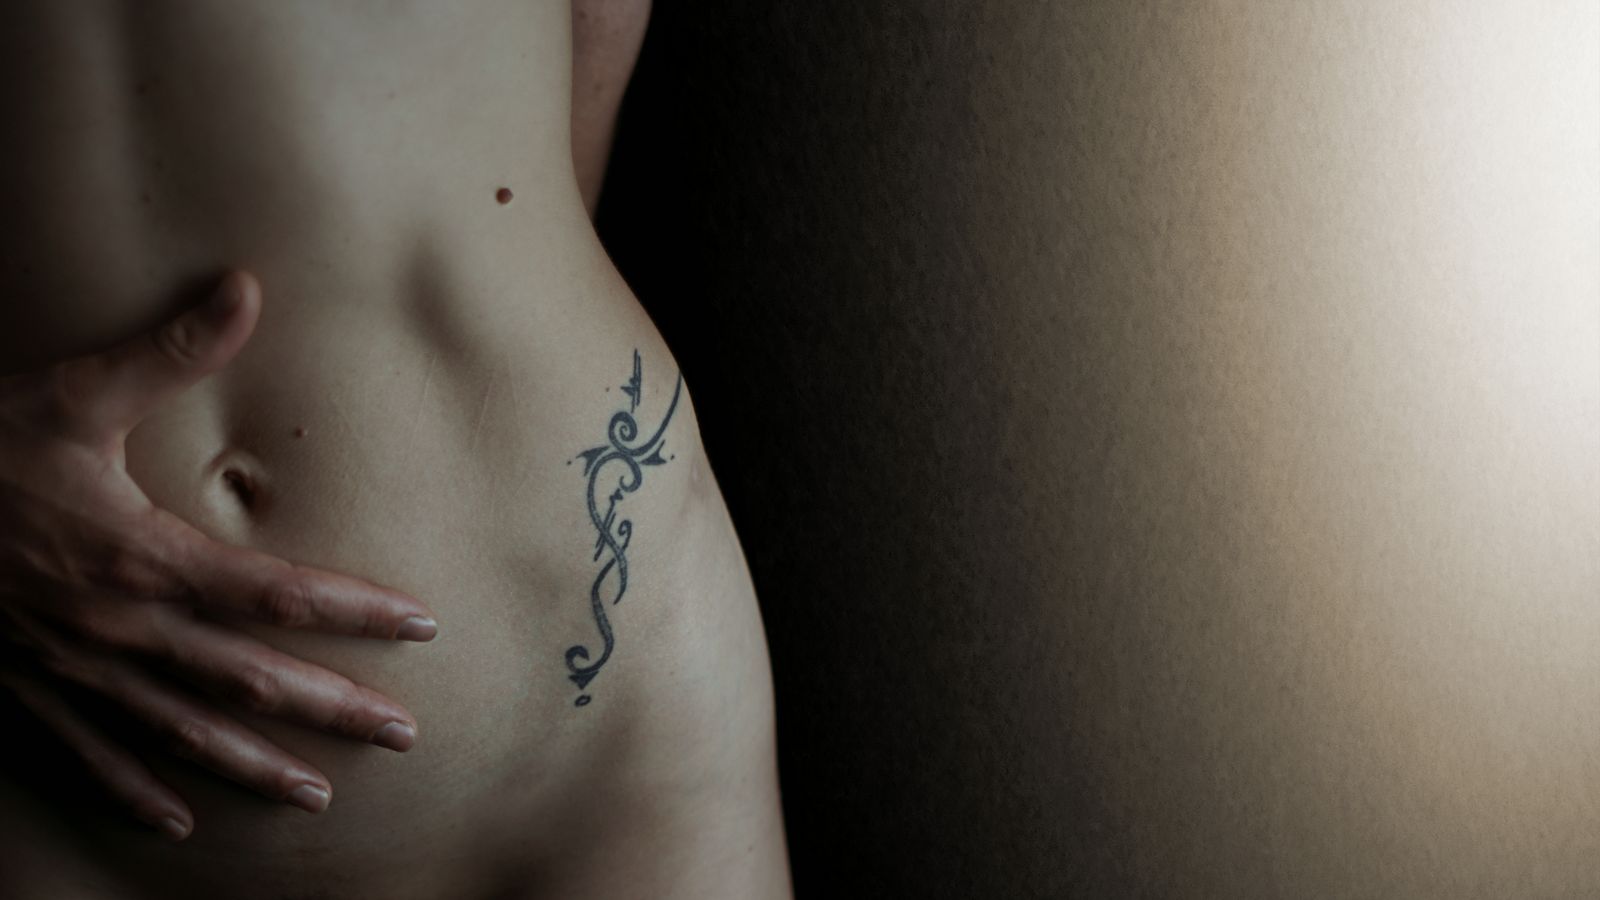 Céline a un tatouage tribal sur la hanche, juste à côté de petites coupures sur la peau de son ventre. Ses doigts sont posés autour de son nombril.